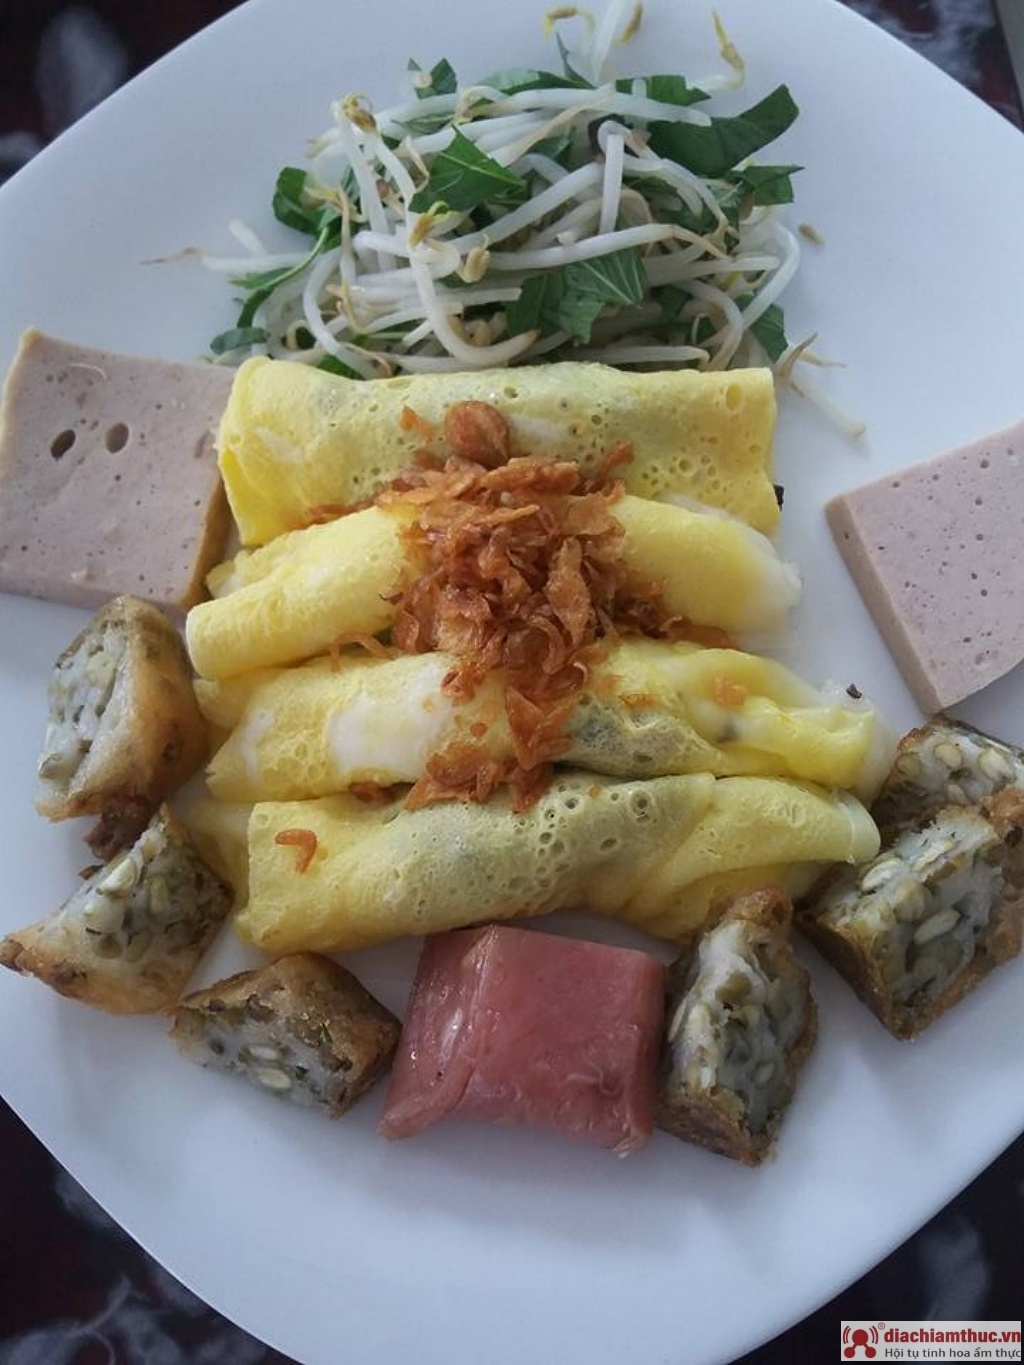 Bánh Cuốn Nam Việt ngon